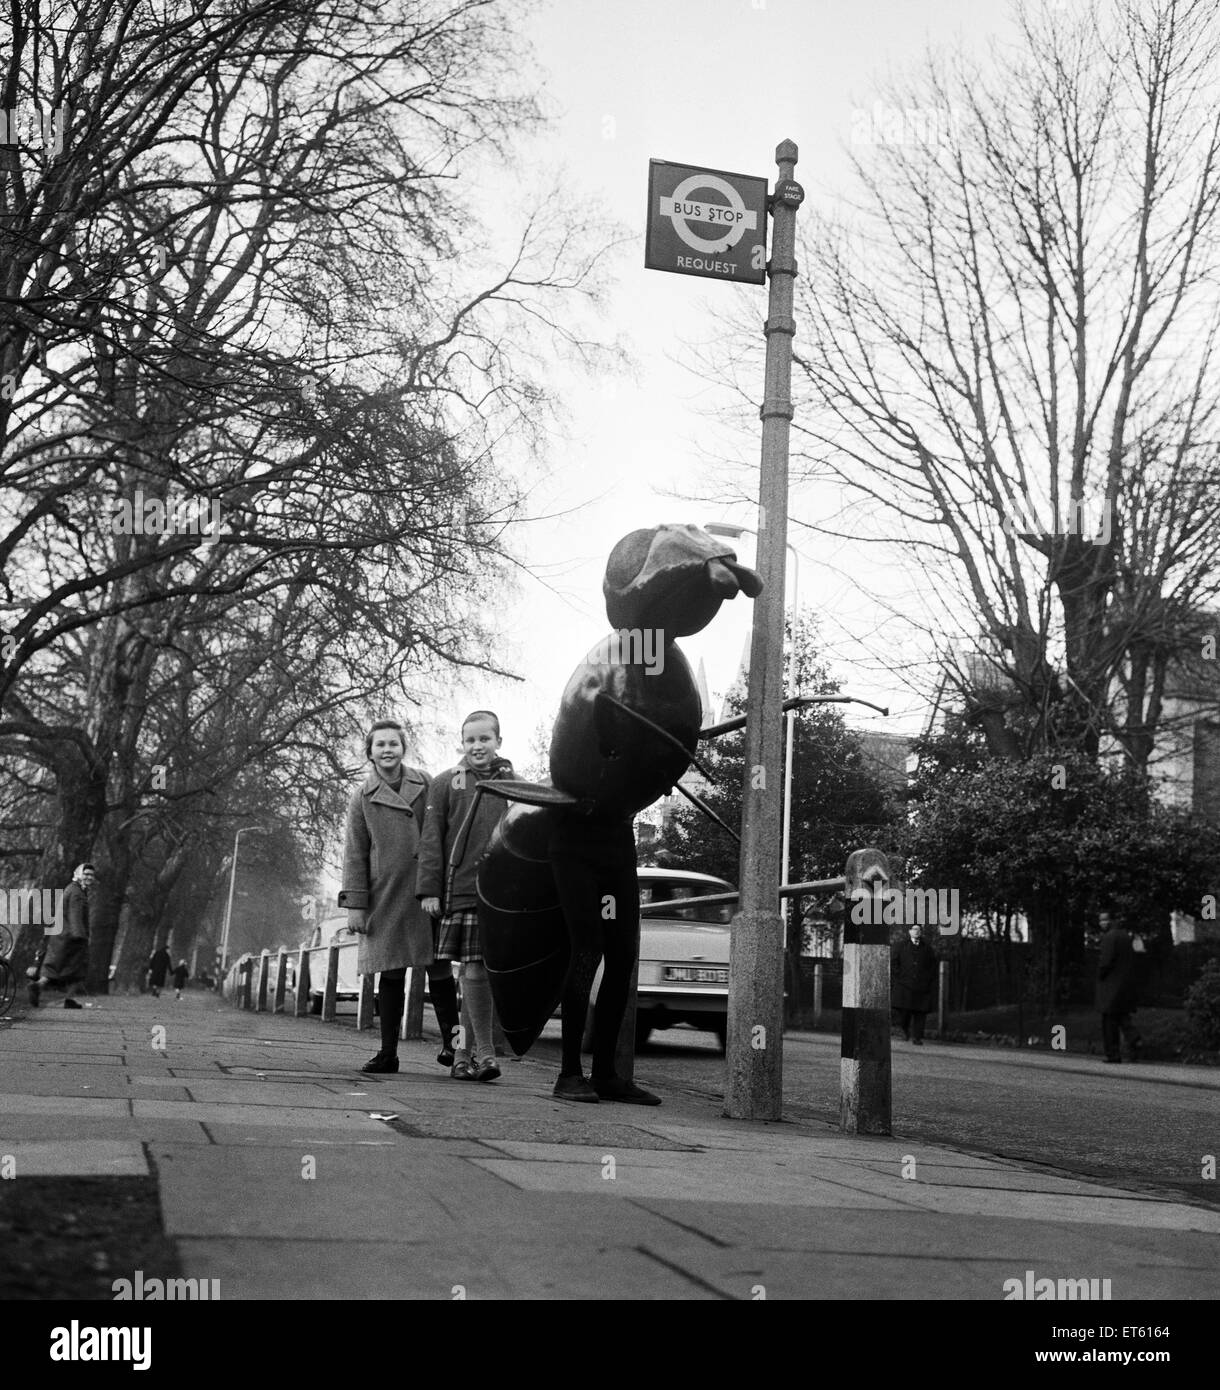 Un 'Zarbi', de la serie de televisión Dr Who (escrito por Bill Struttonwill) ,'la Web Planet'. La Zarbi está a una parada de autobús fuera de la BBC TV studio en Ealing, al oeste de Londres, con dos niños de la localidad. La Zarbi (diseñada por John Wood), tiene una hormiga como ap Foto de stock